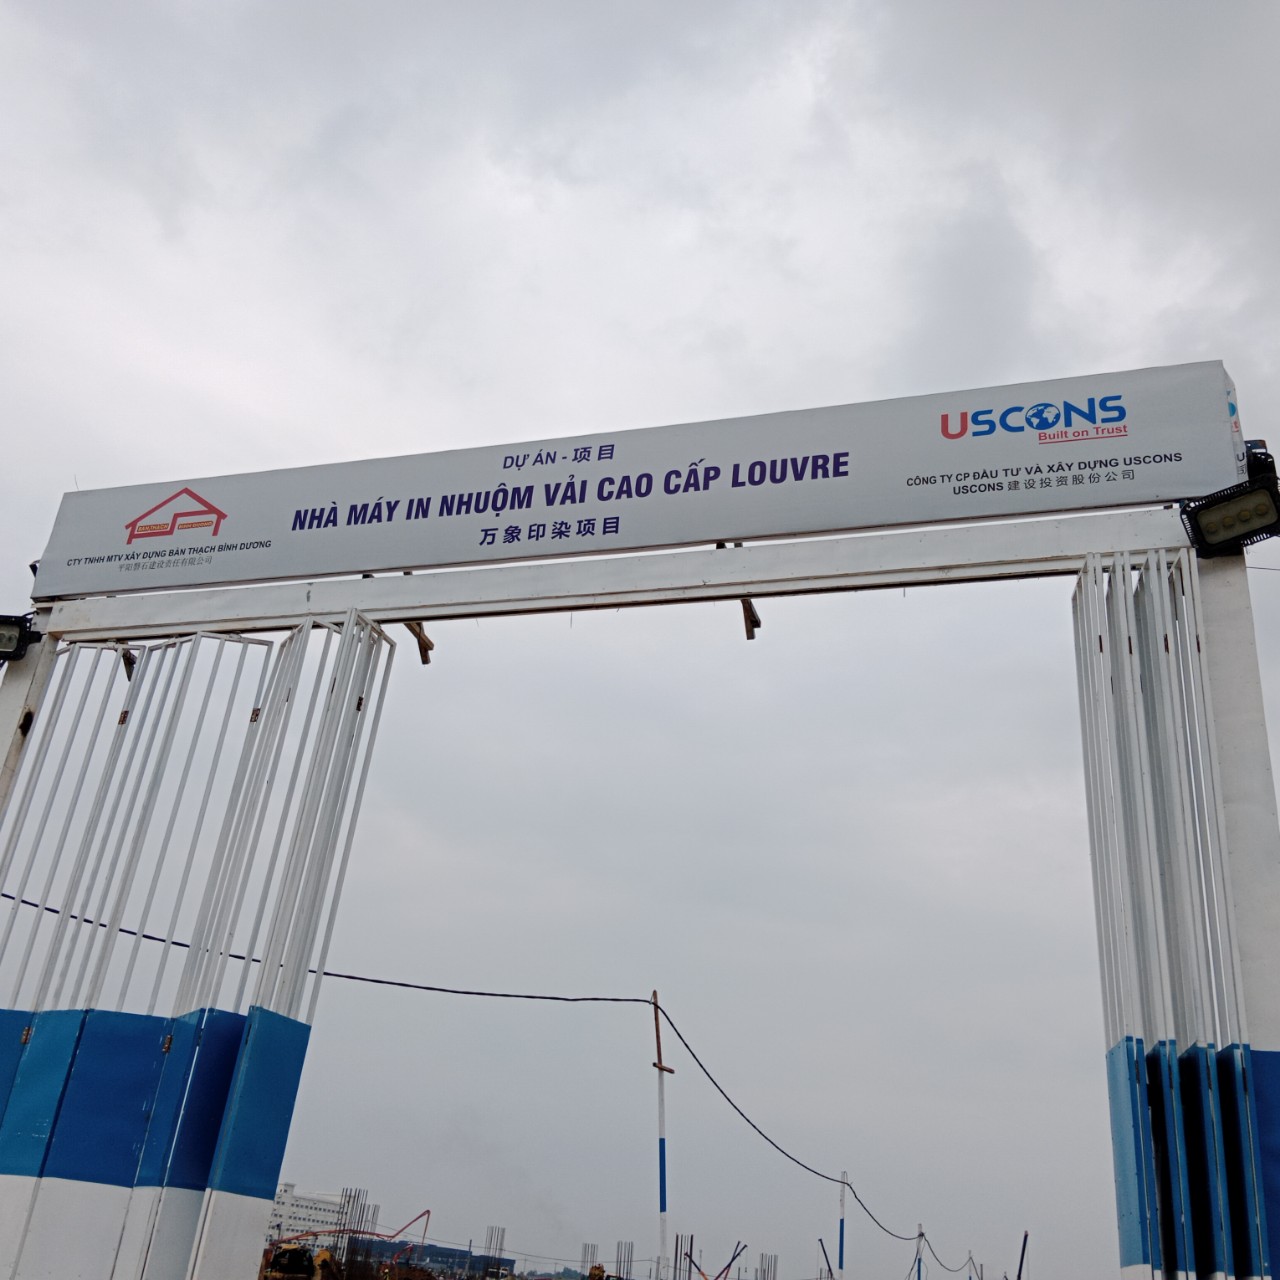 Khởi công nhà máy in nhuộm vải cao cấp LOUVRE trị giá 210 triệu USD tại Tây Ninh